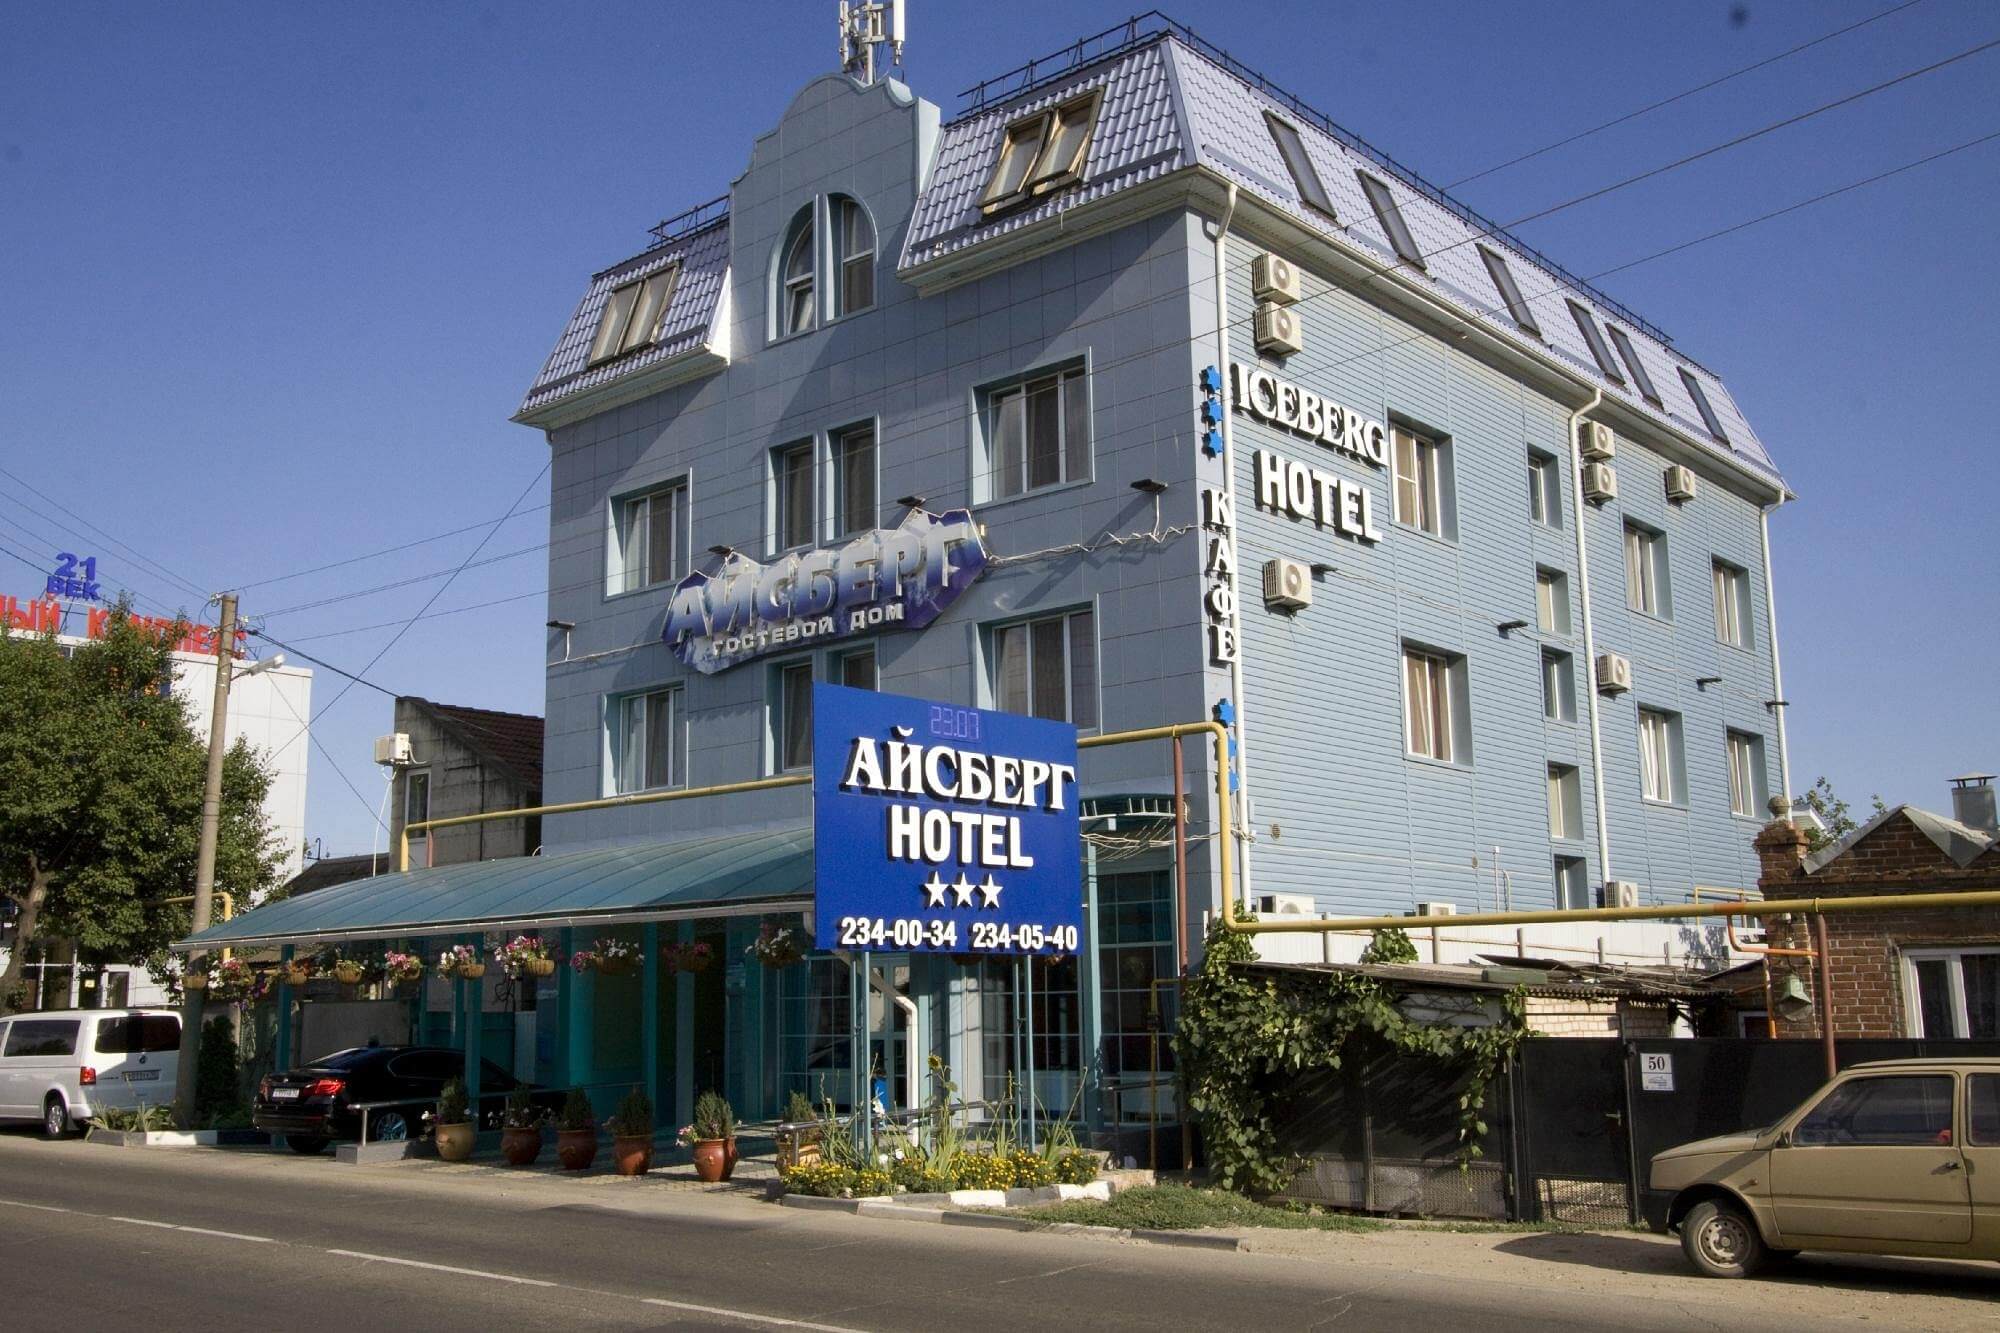 Здание отеля. Стены выкрашены в светло-голубой цвет.